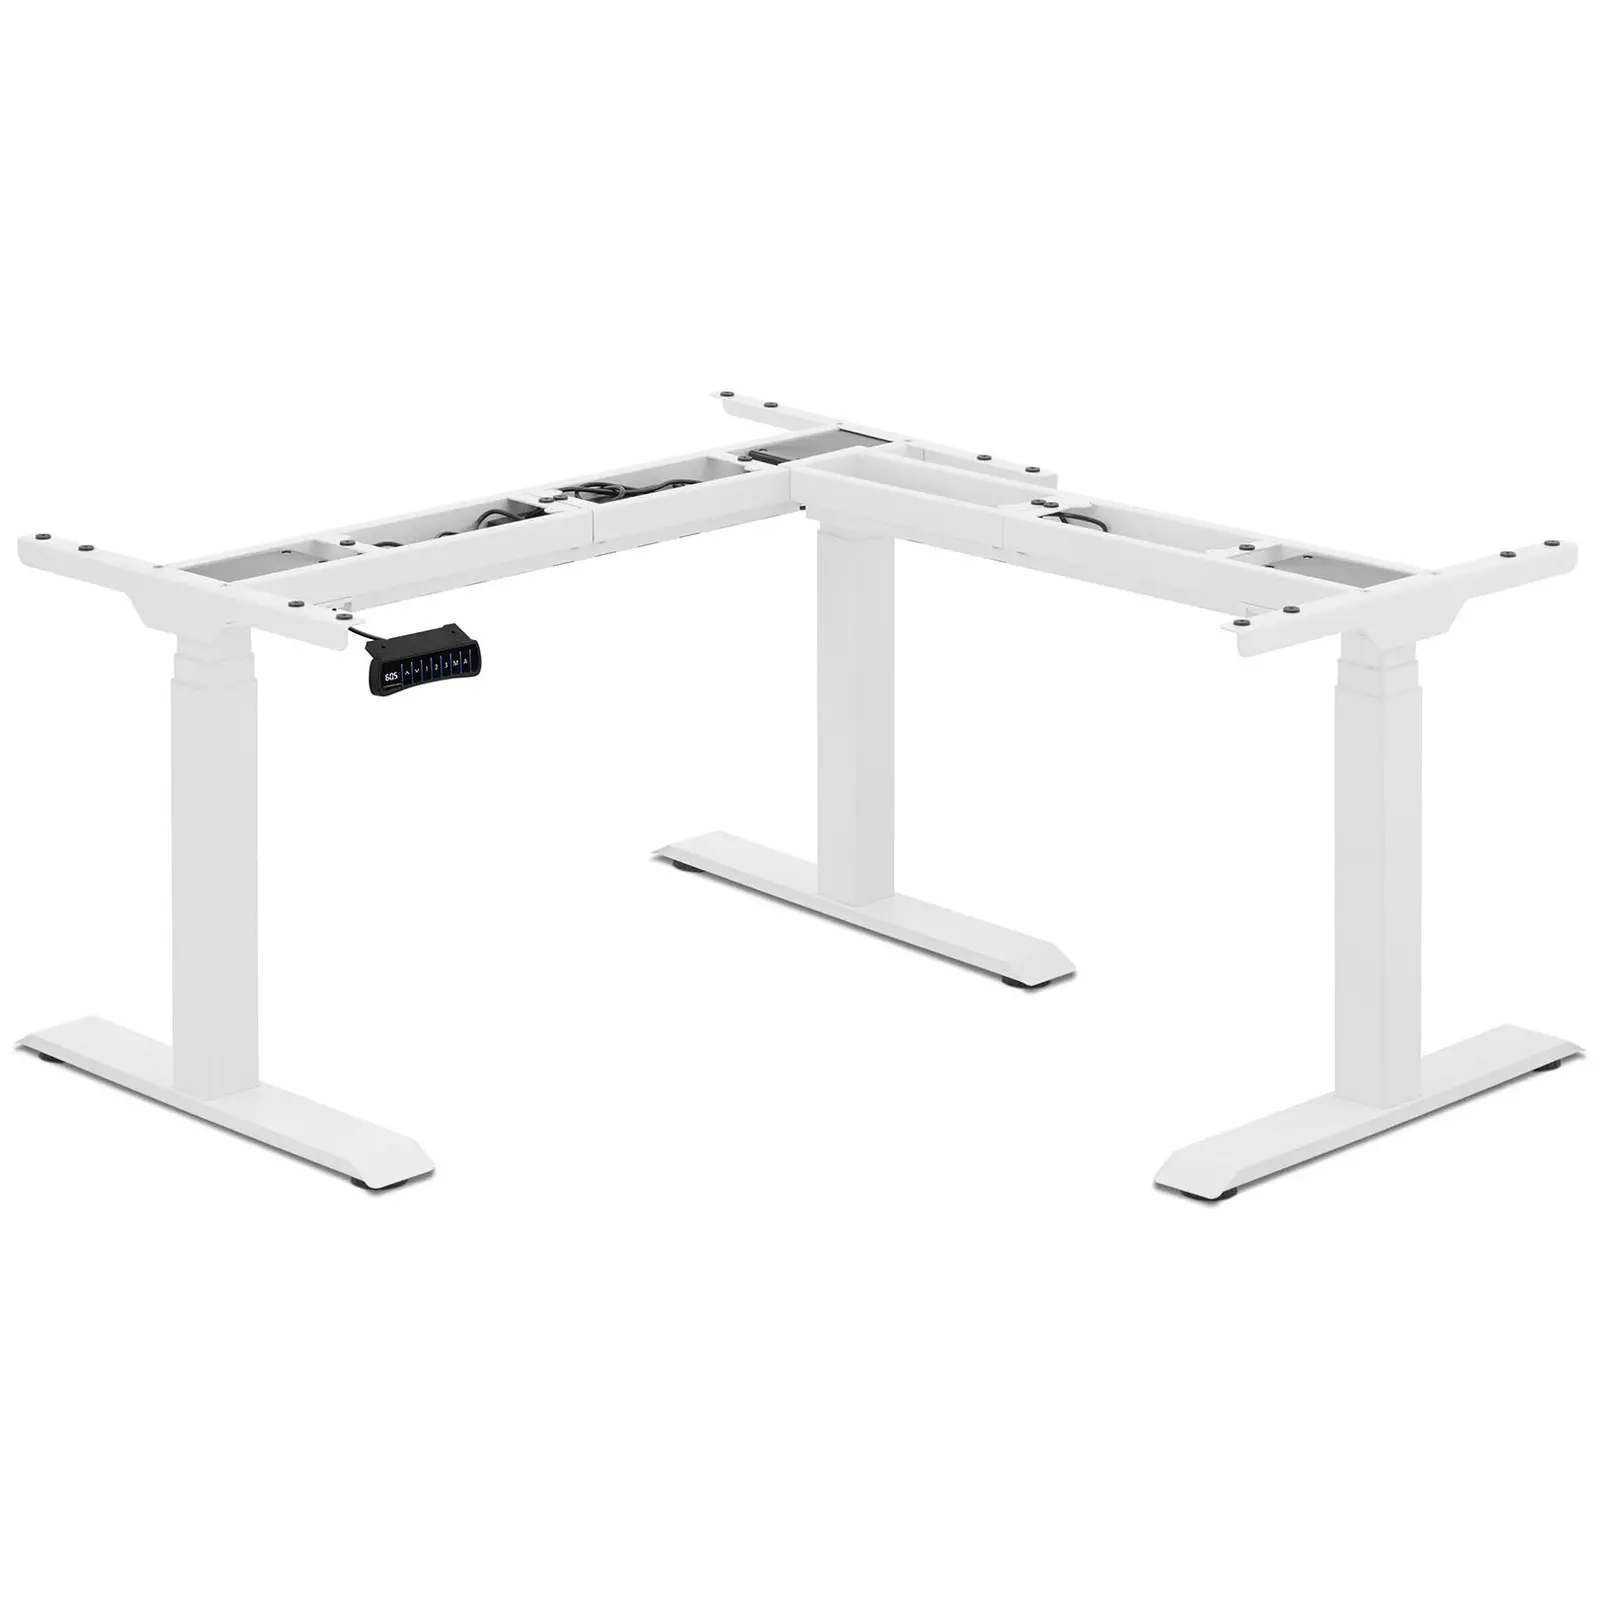 Estrutura para mesa de escritório - altura: 60-125 cm - largura: 90-150 cm (esquerda) / 110-190 cm (direita)